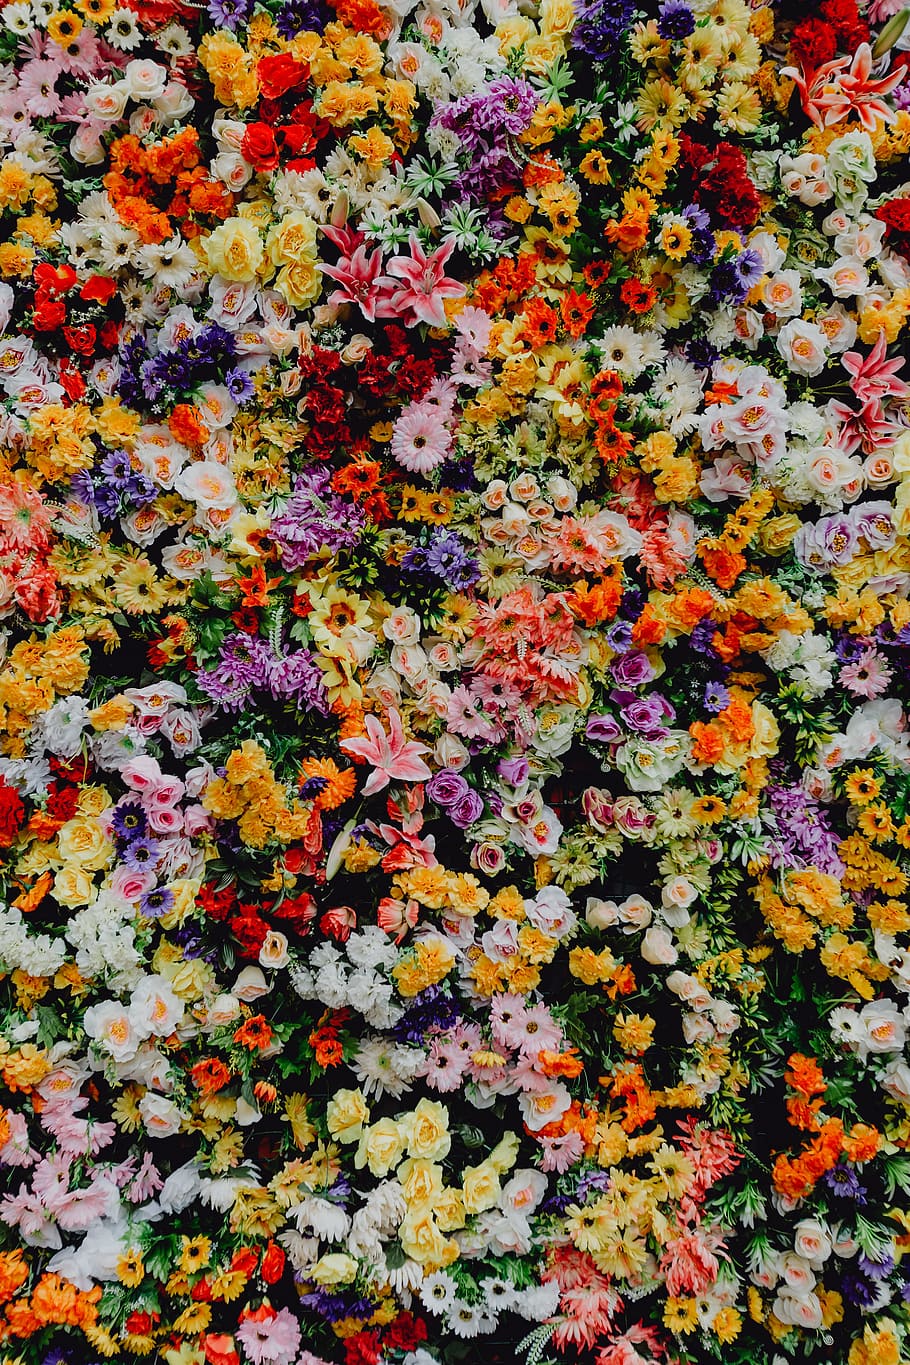 fest santo antonio, -, varios, pared de fondo de flores de color, museo, de, lisboa, portugal, flores, feriado